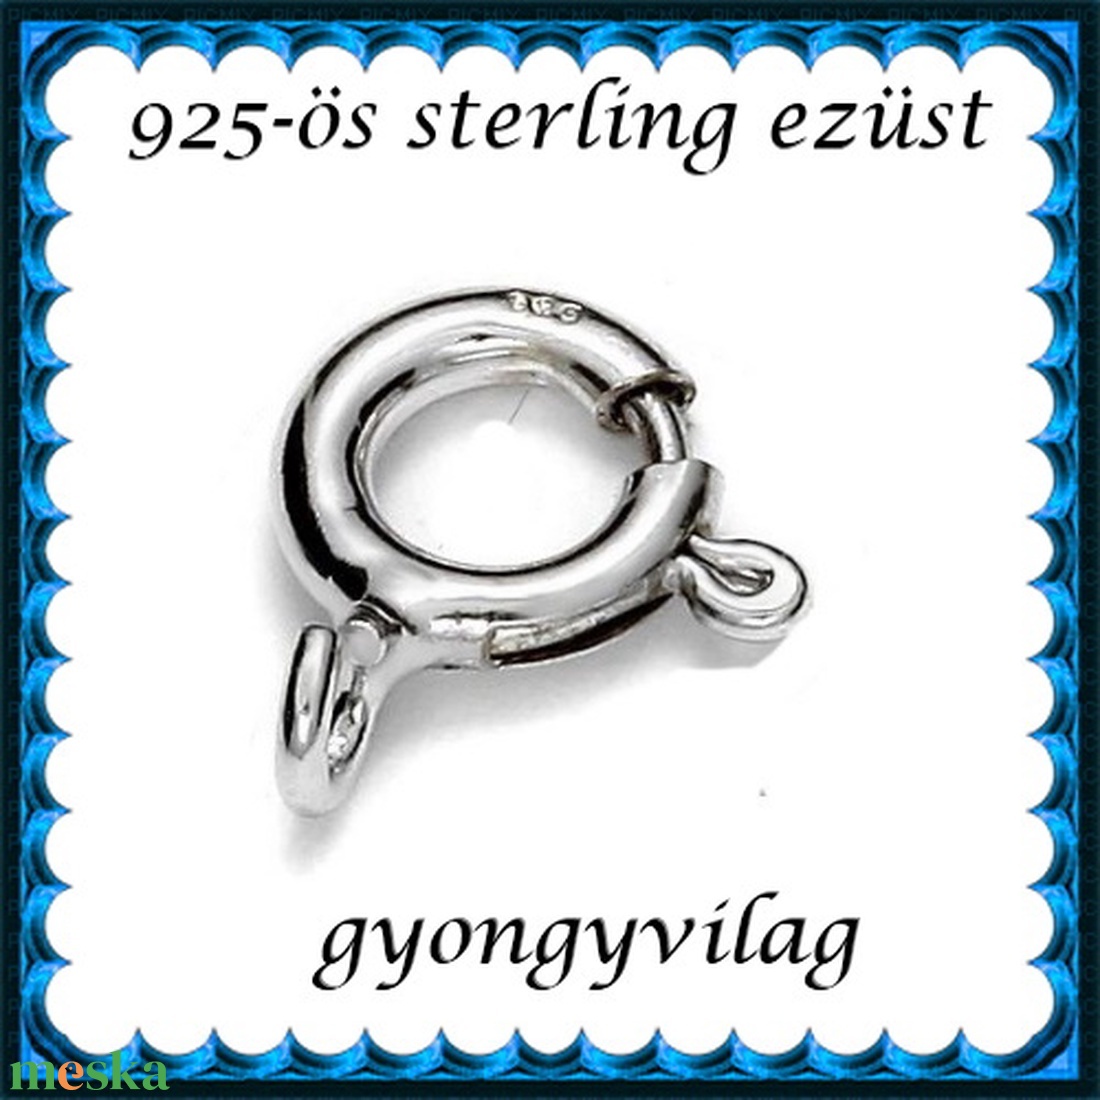 925-ös sterling ezüst ékszerkellék: lánckalocs  ELK 1S 12-8 - gyöngy, ékszerkellék - egyéb alkatrész - Meska.hu